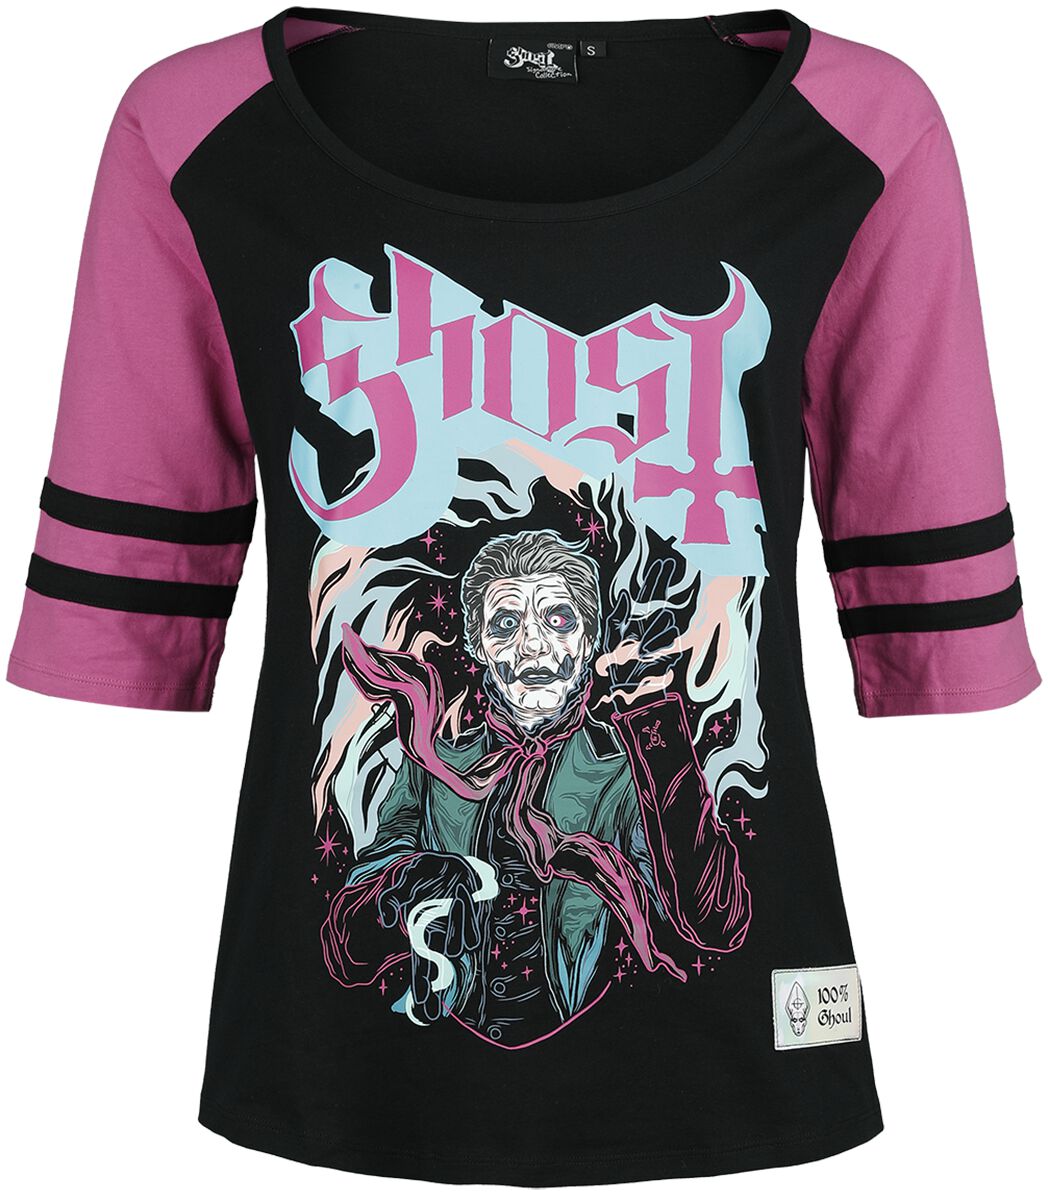 Ghost Langarmshirt - EMP Signature Collection - S bis XXL - für Damen - Größe M - schwarz/pink  - EMP exklusives Merchandise!